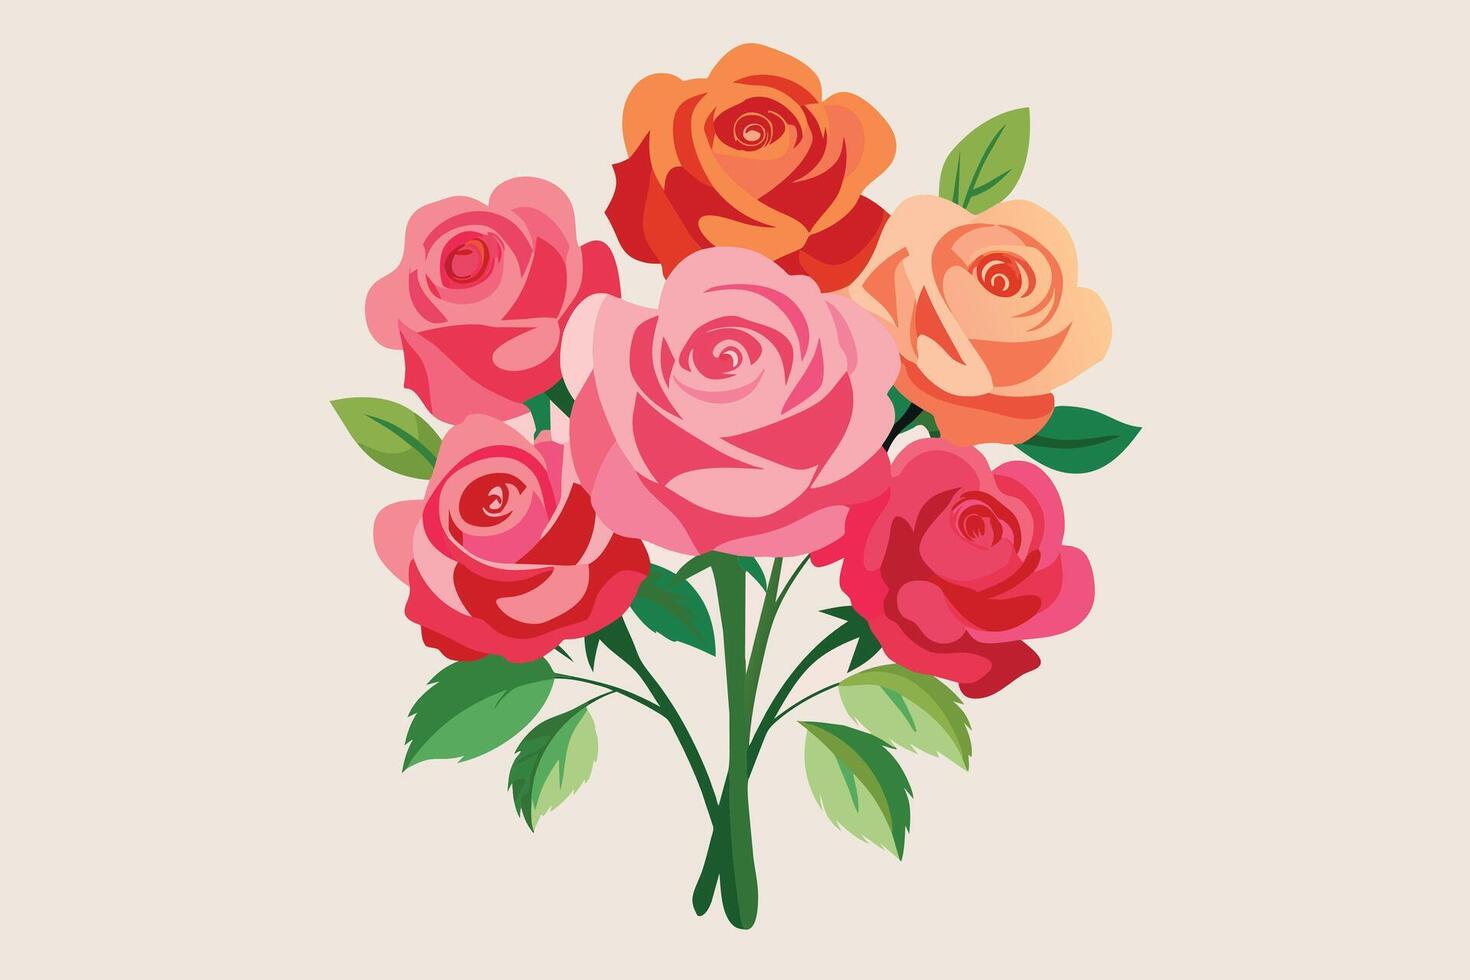 Rose flower arrangement watercolor hand painted bouquet set vector